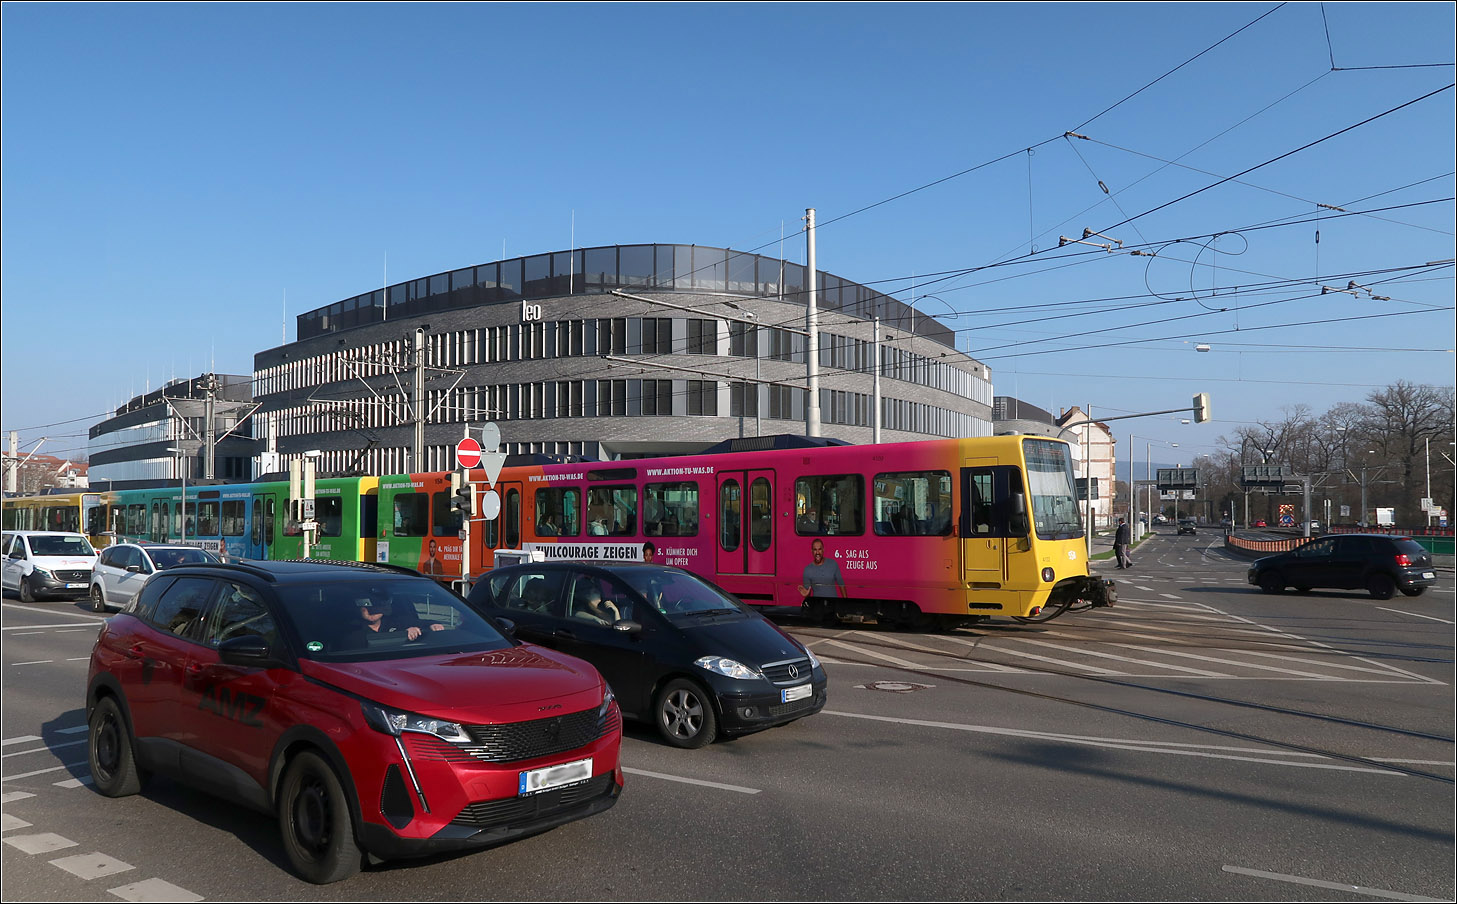 Auf die Plätze - Fertig - Los -

Sowohl die Autos, als auch die farbige Stadtbahn haben an den Lichtsignalanlagen am Löwentor freie Fahrt bekommen und haben sich in Bewegung gesetzt.

Stuttgart, 01.03.2023 (M)